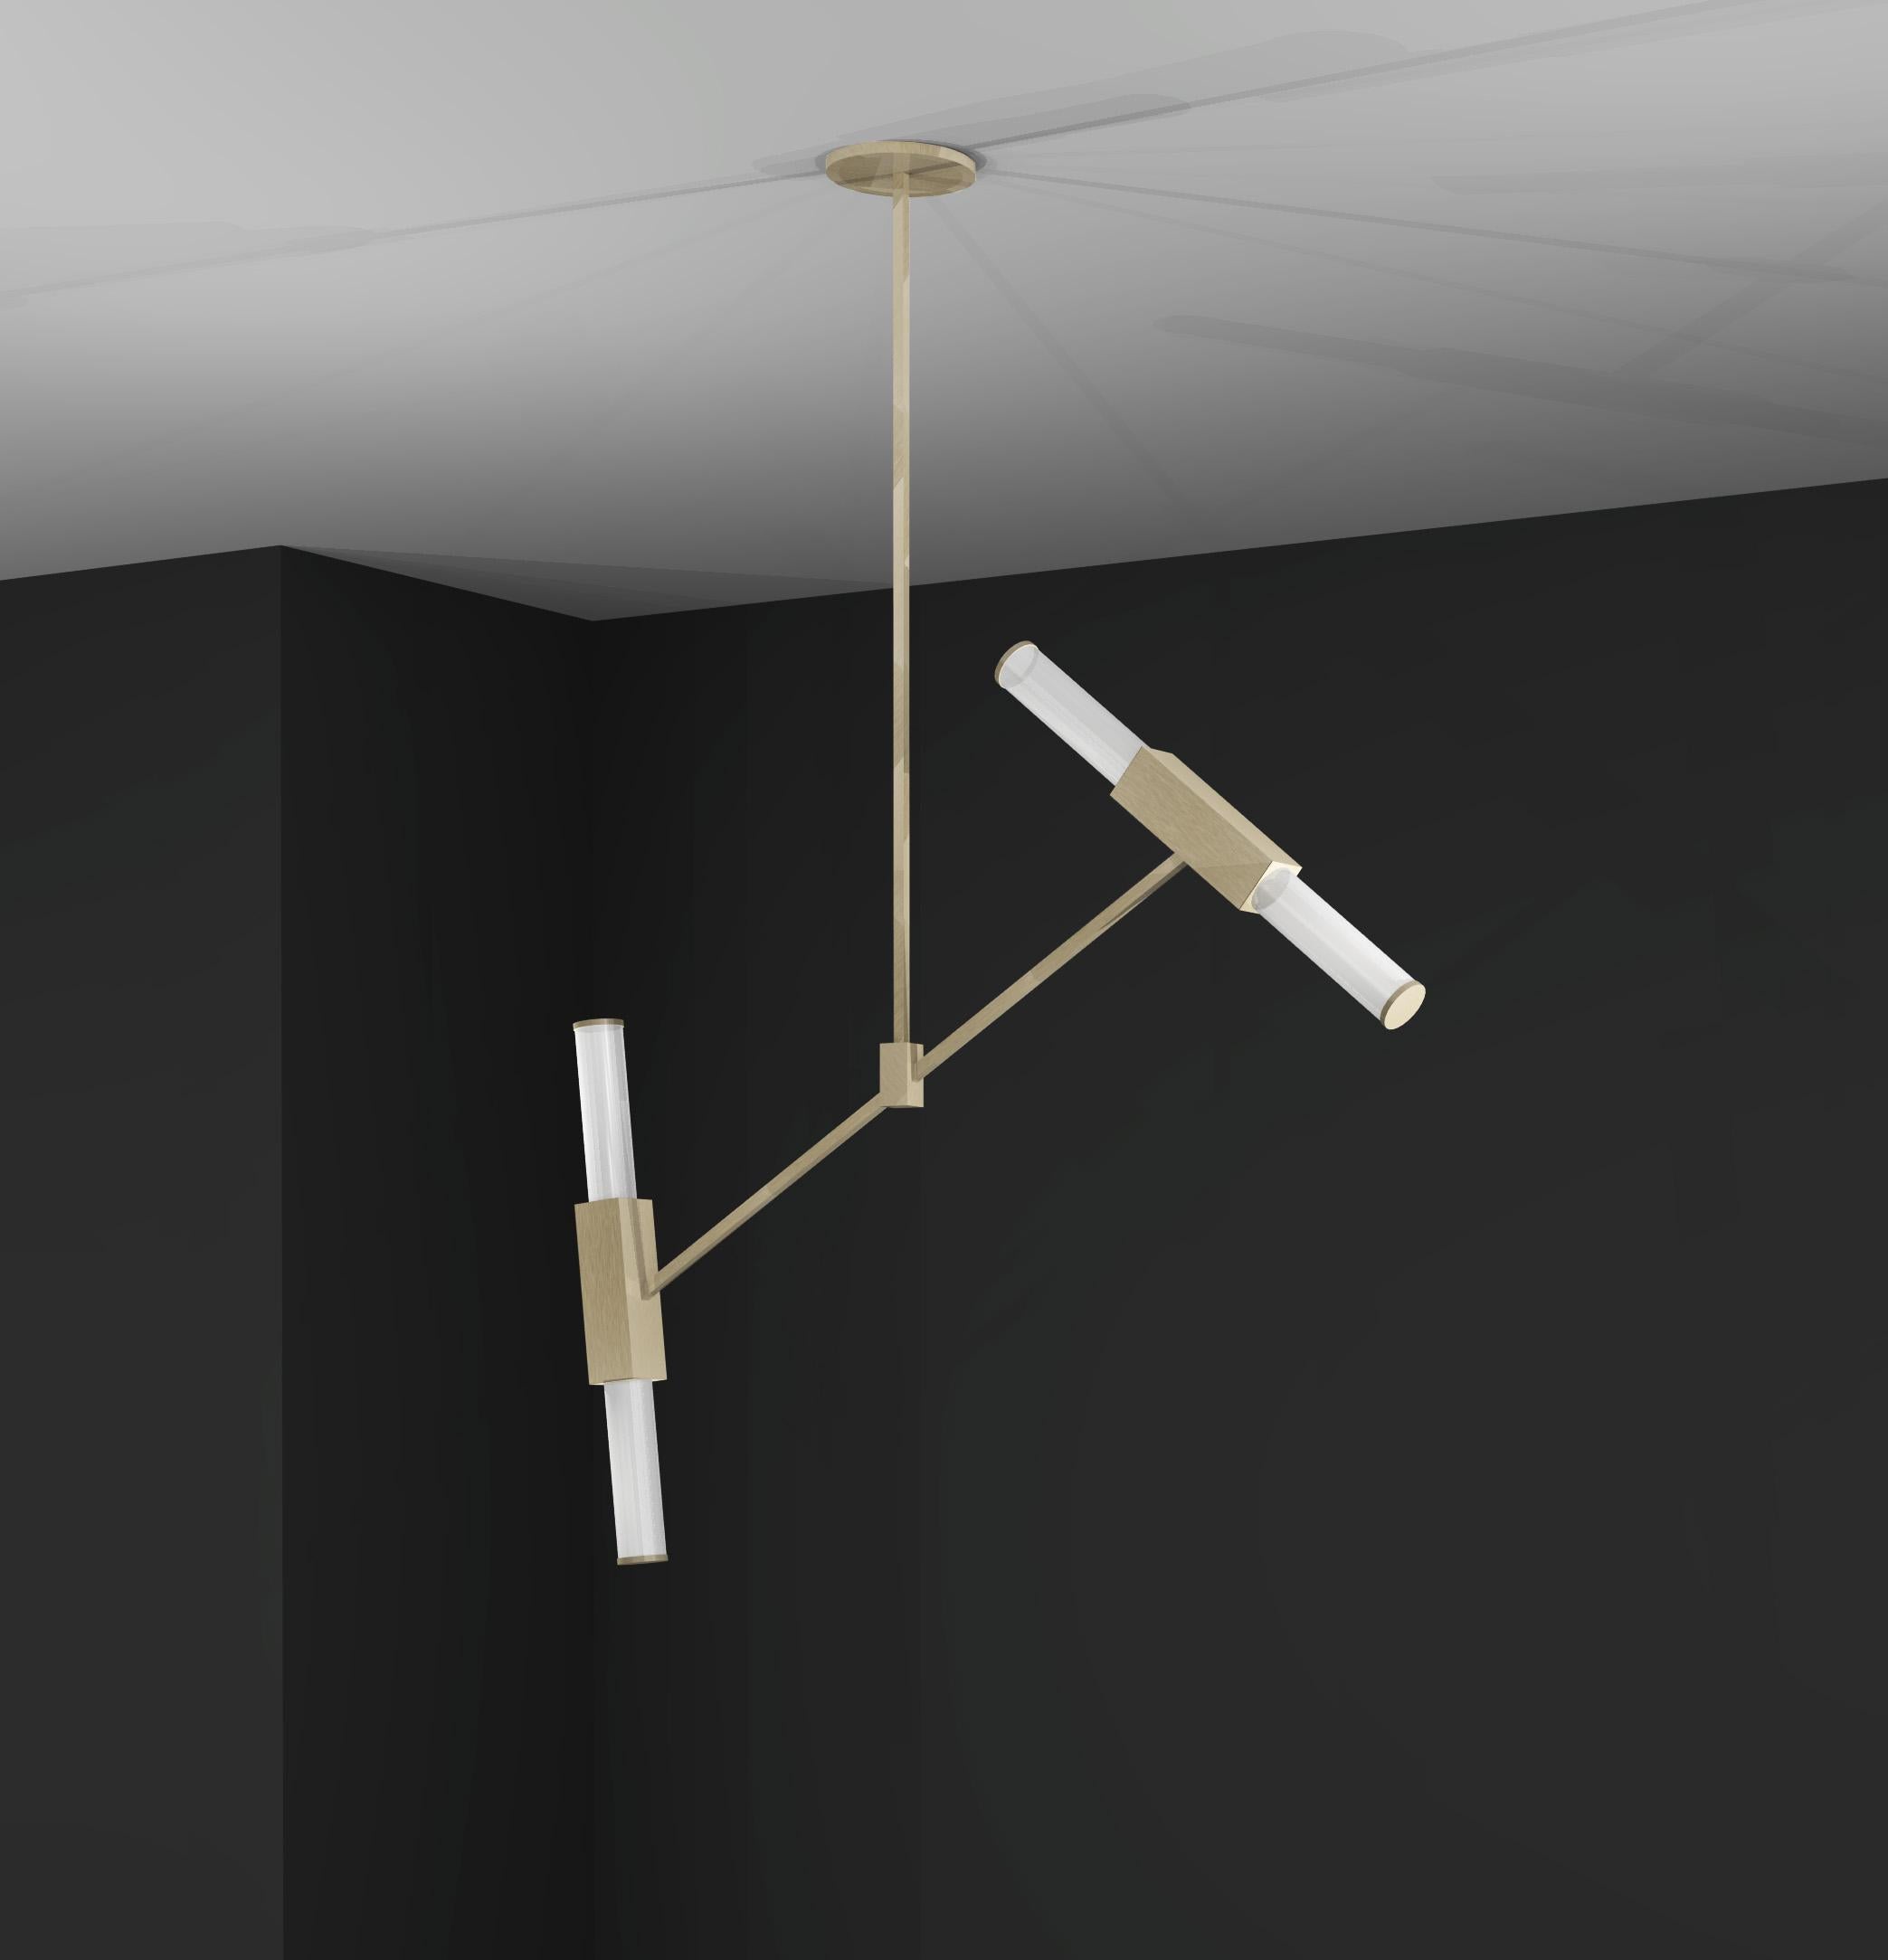 Cette suspension fait partie d'une gamme qui a été conçue à l'origine comme des lampes de salle de bains et qui s'est développée en une collection complète, créée pour obtenir un design intemporel. Utilisant des matériaux de haute qualité, notamment